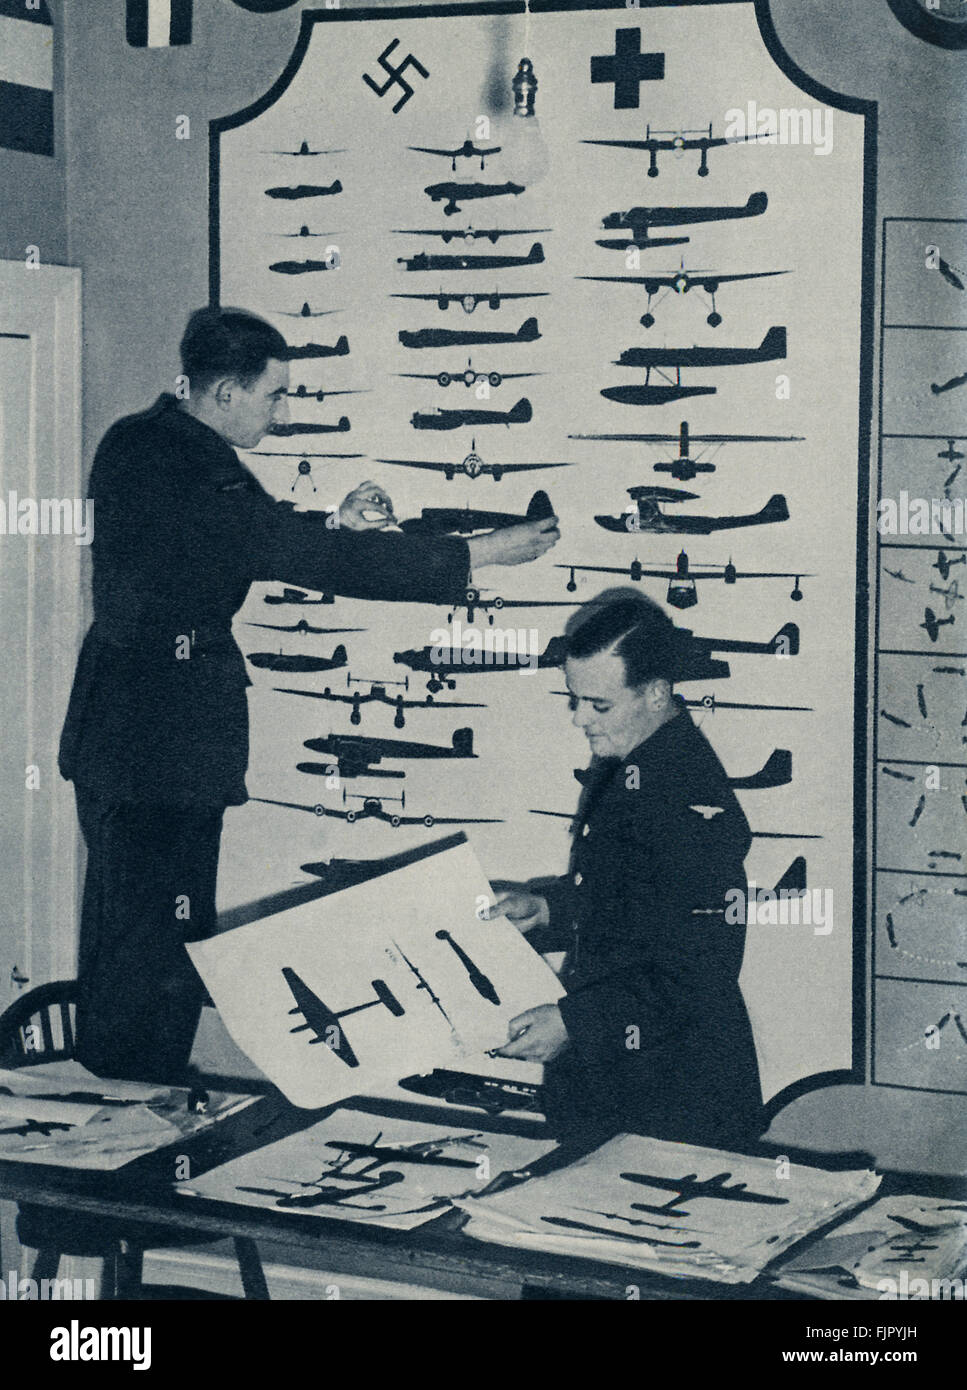 Les cadets de l'air ,c. 1940. La DEUXIÈME GUERRE MONDIALE 1940 à un camp d'entraînement de la force aérienne. Les cadets à l'œuvre dans la reconnaissance d'avions Prix Banque D'Images